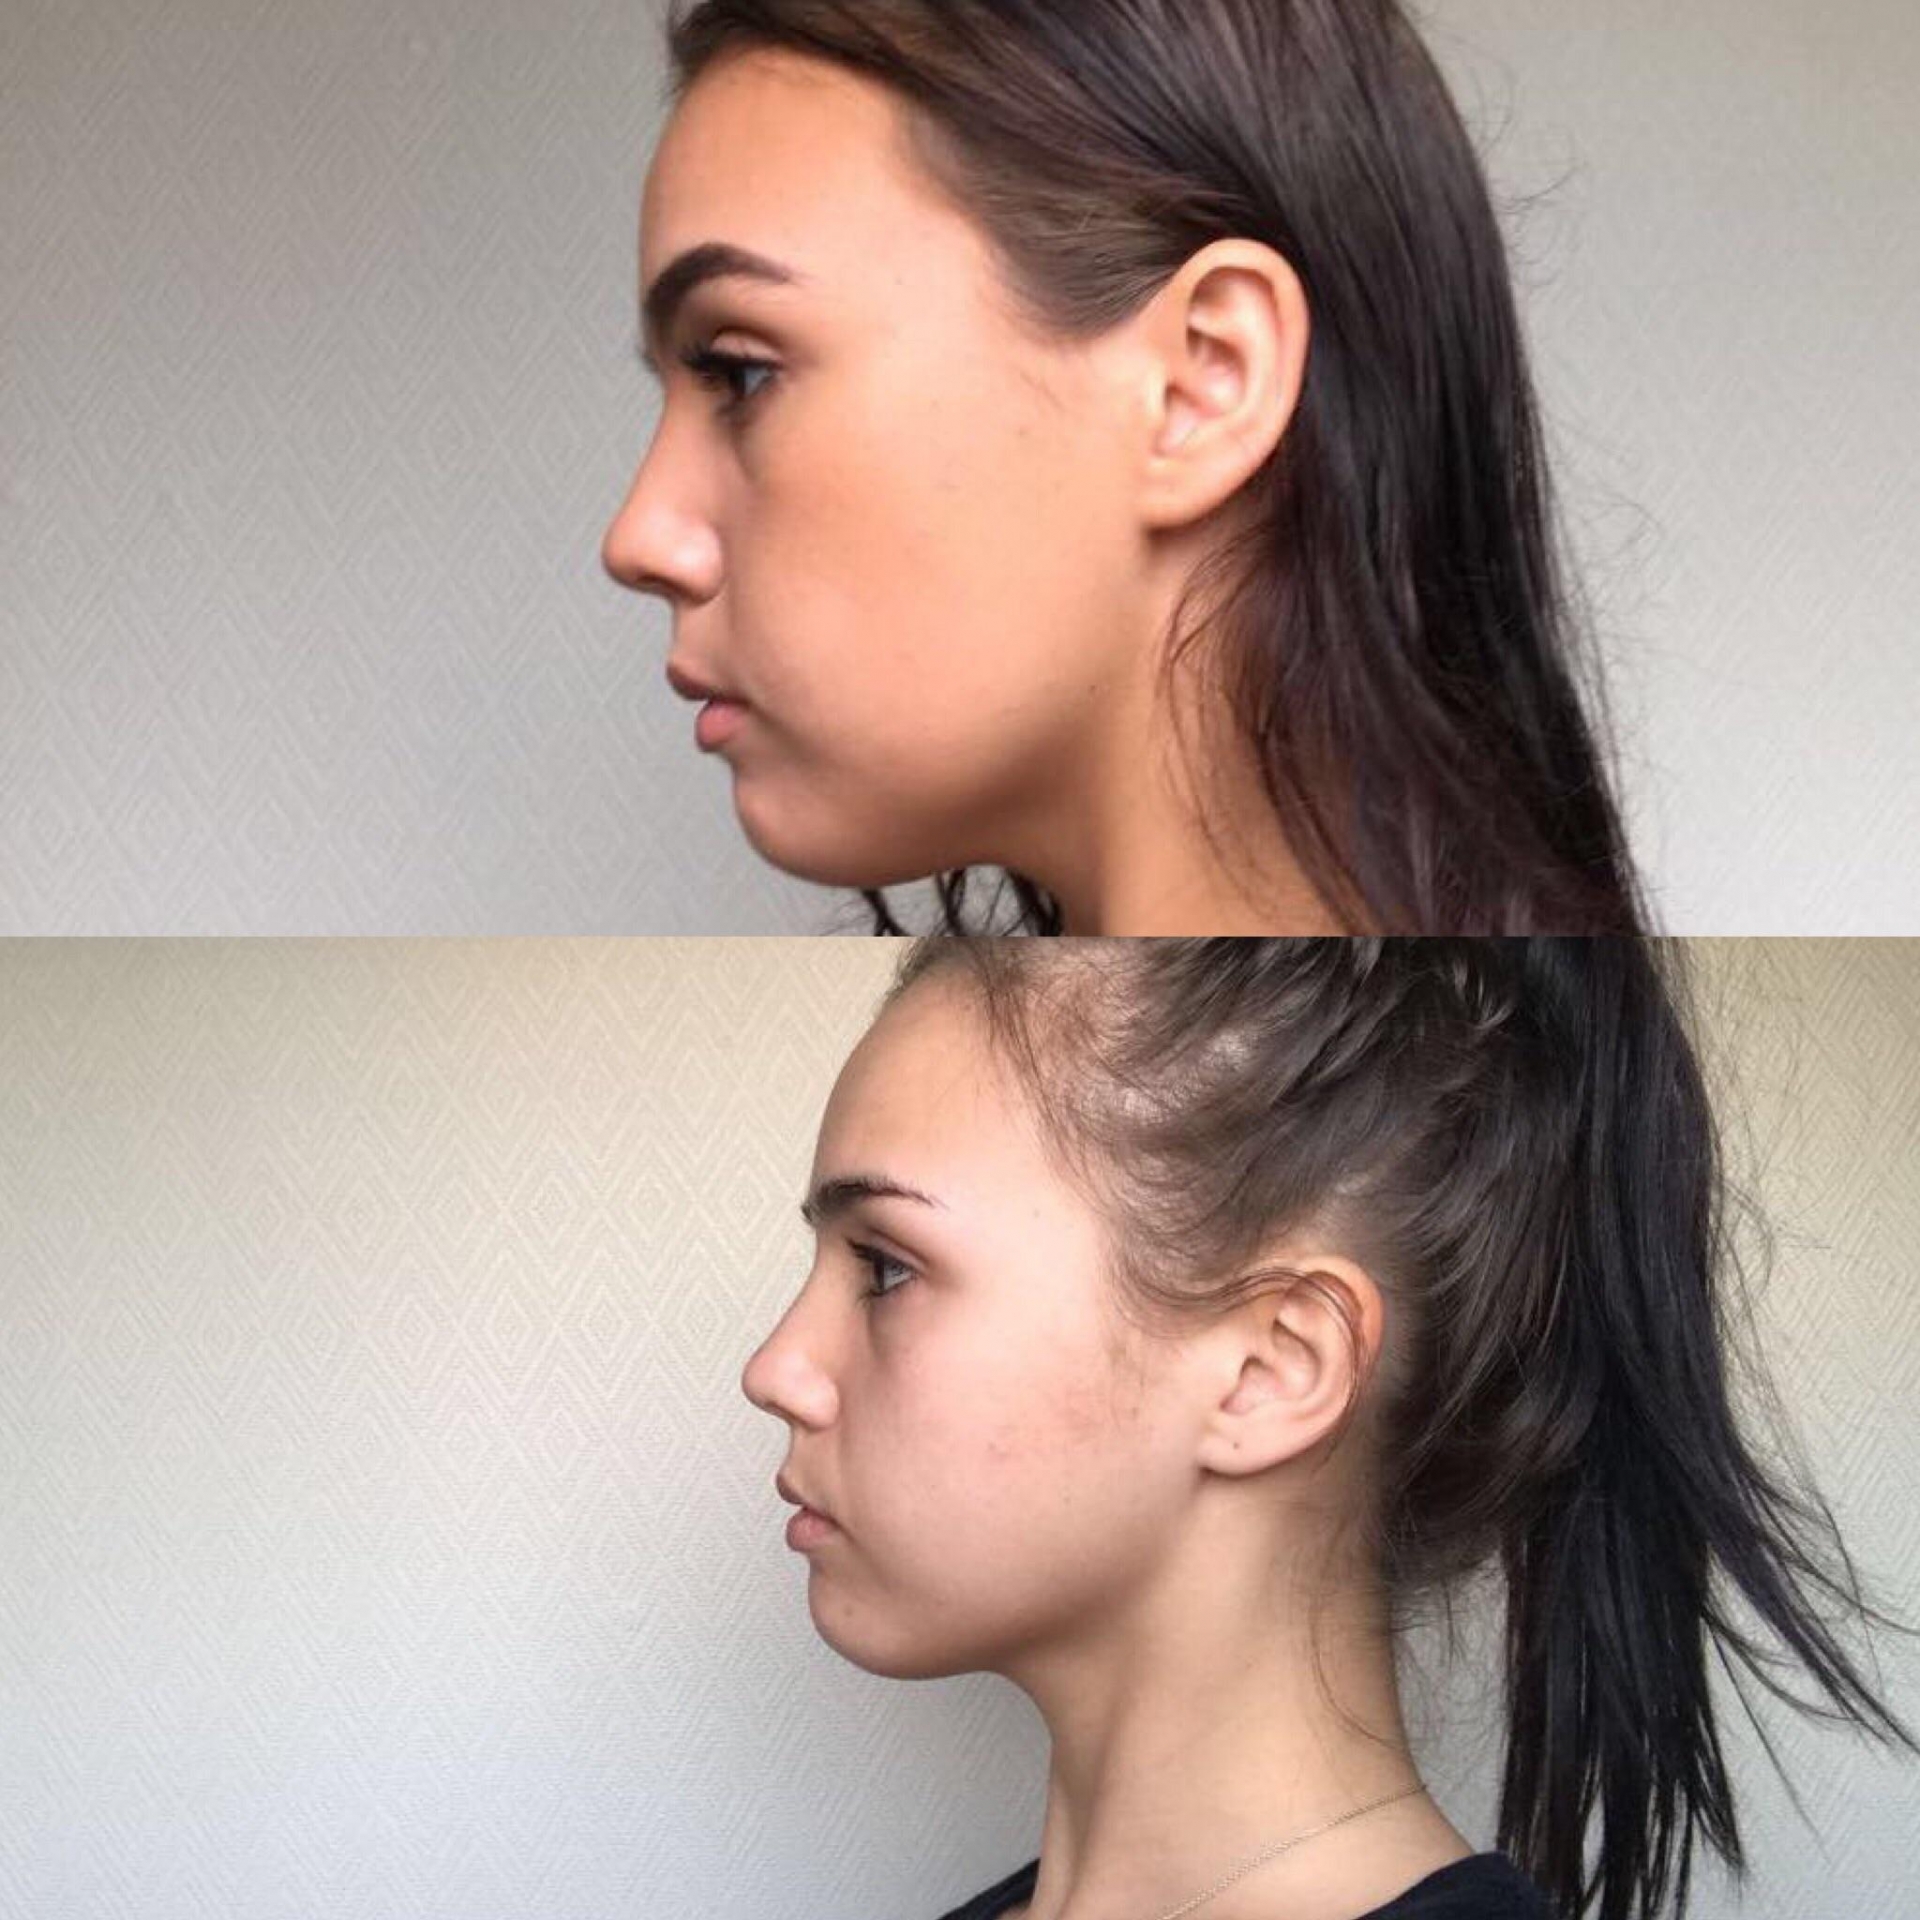 Phương pháp Mewing: Đặt lưỡi lên vòm họng cũng có thể  cải thiện thẩm mỹ gương mặt - Ảnh 2